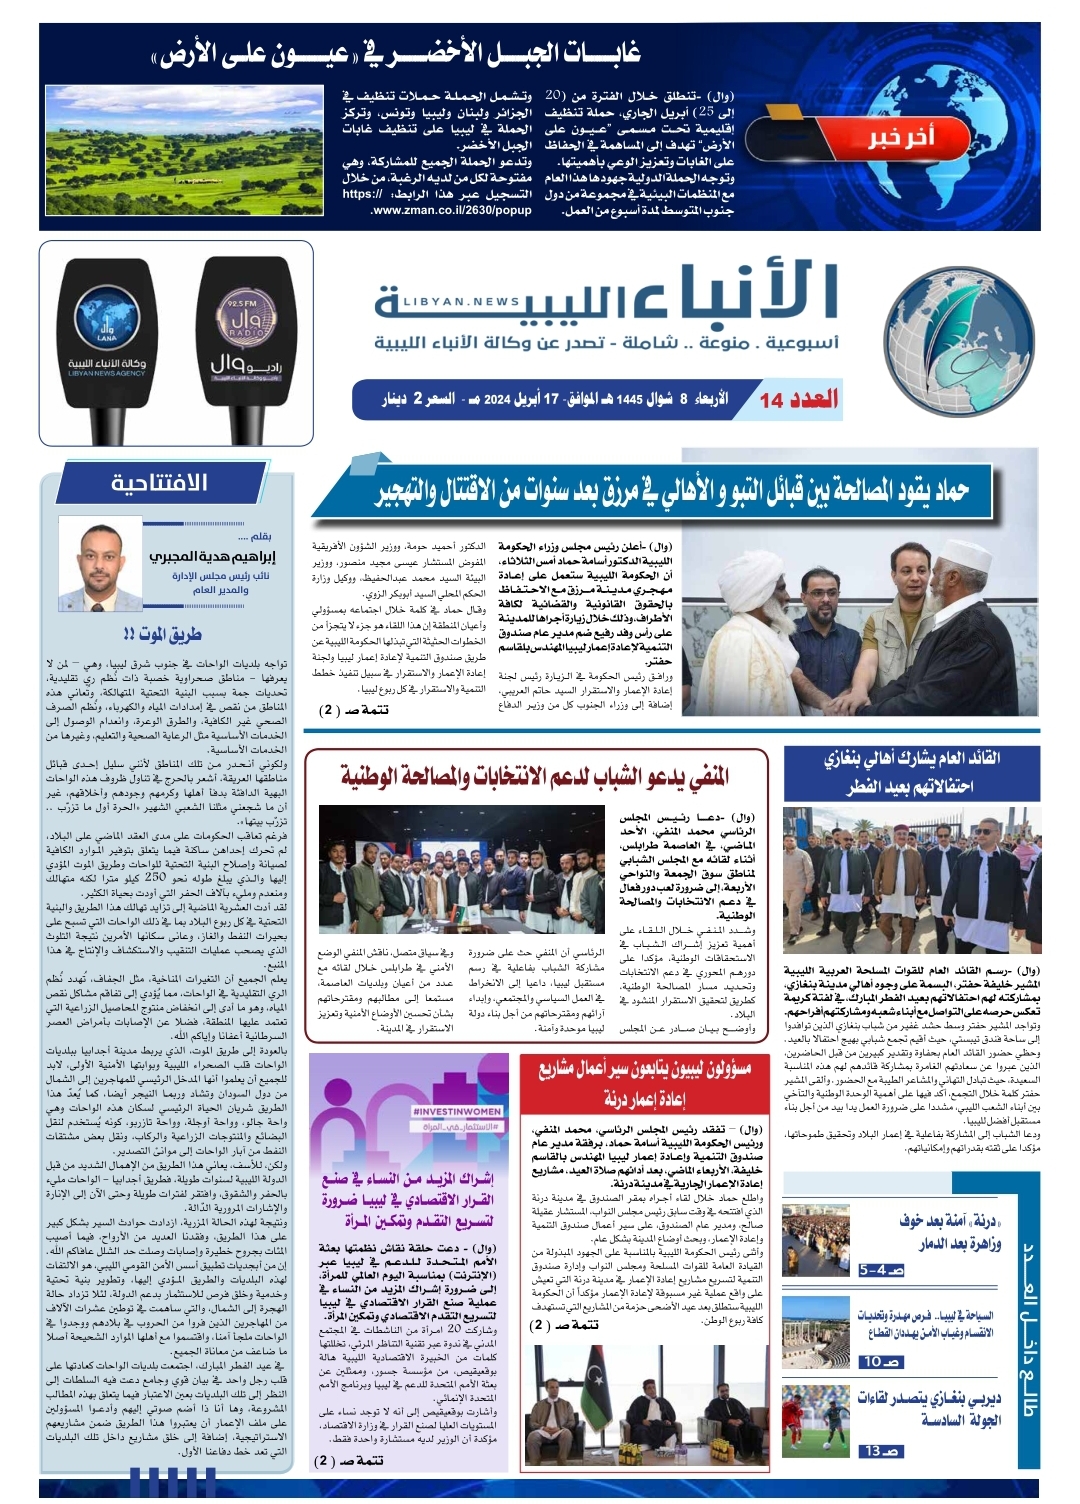 صحيفة الأنباء الليبية العدد (العدد الرابع عشر)